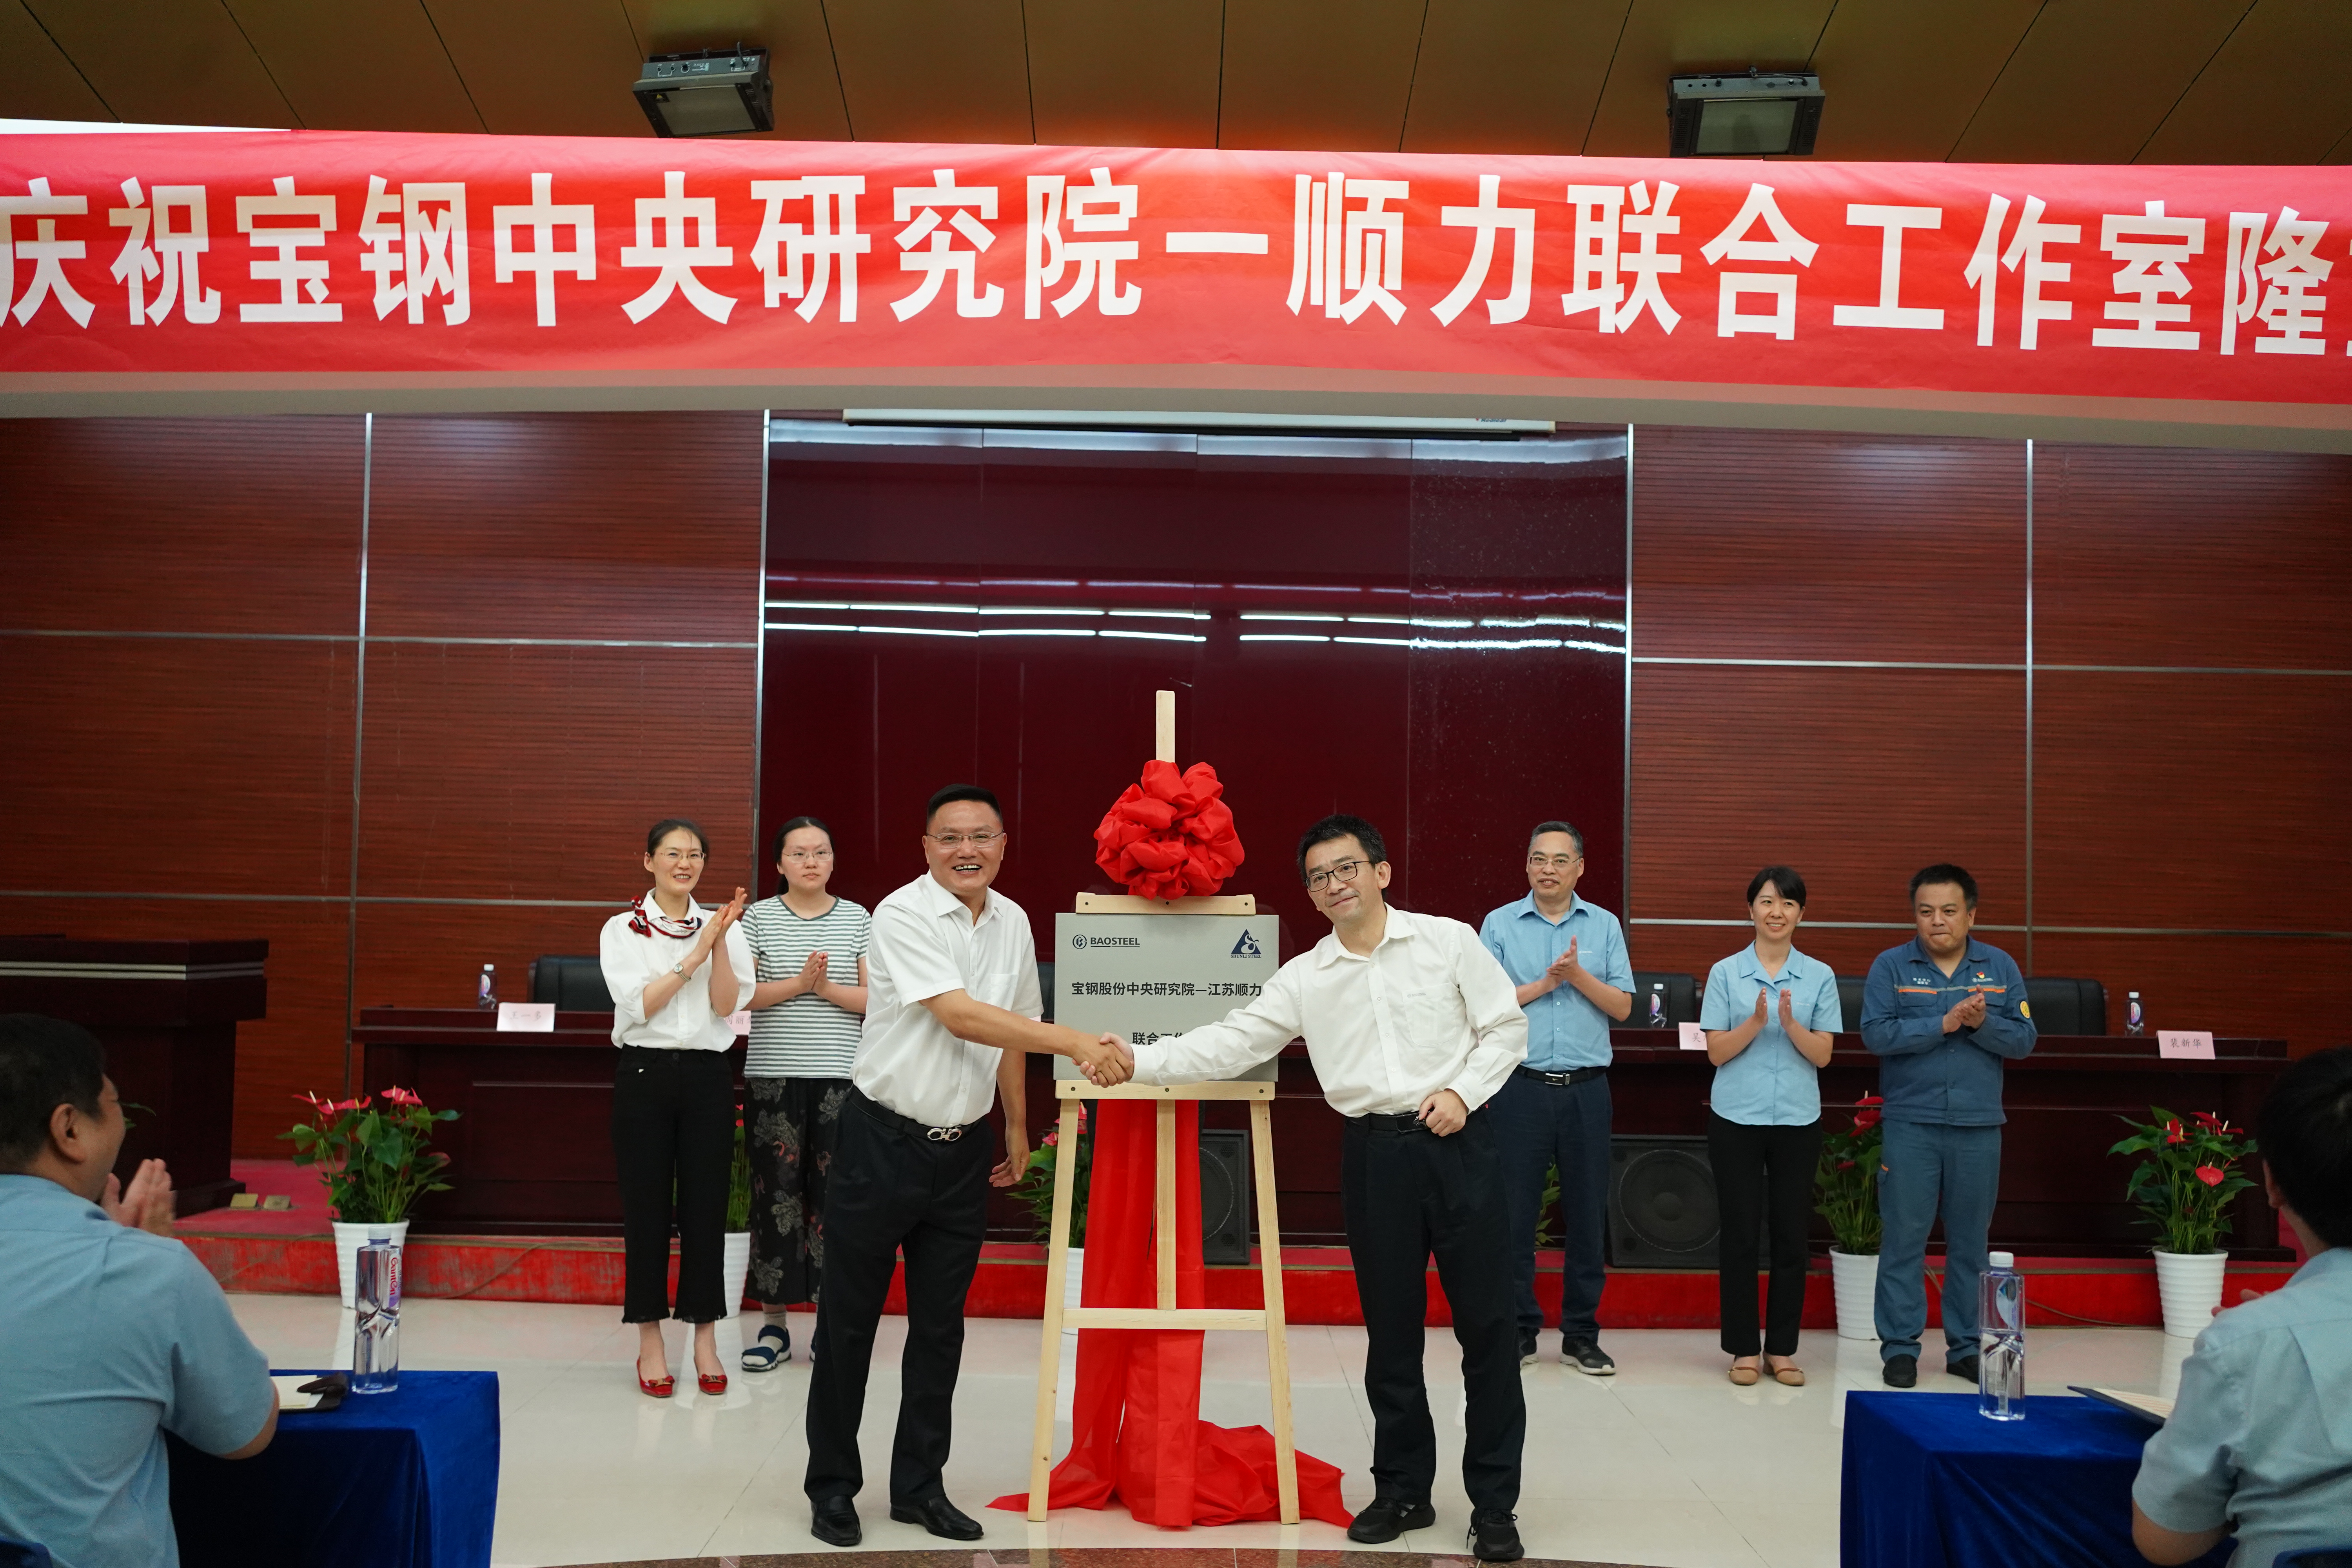 Baowu Group Baosteel Central Research Institute-Shunli Gezamenlijke studio werd groots onthuld in Shunli Steel Group